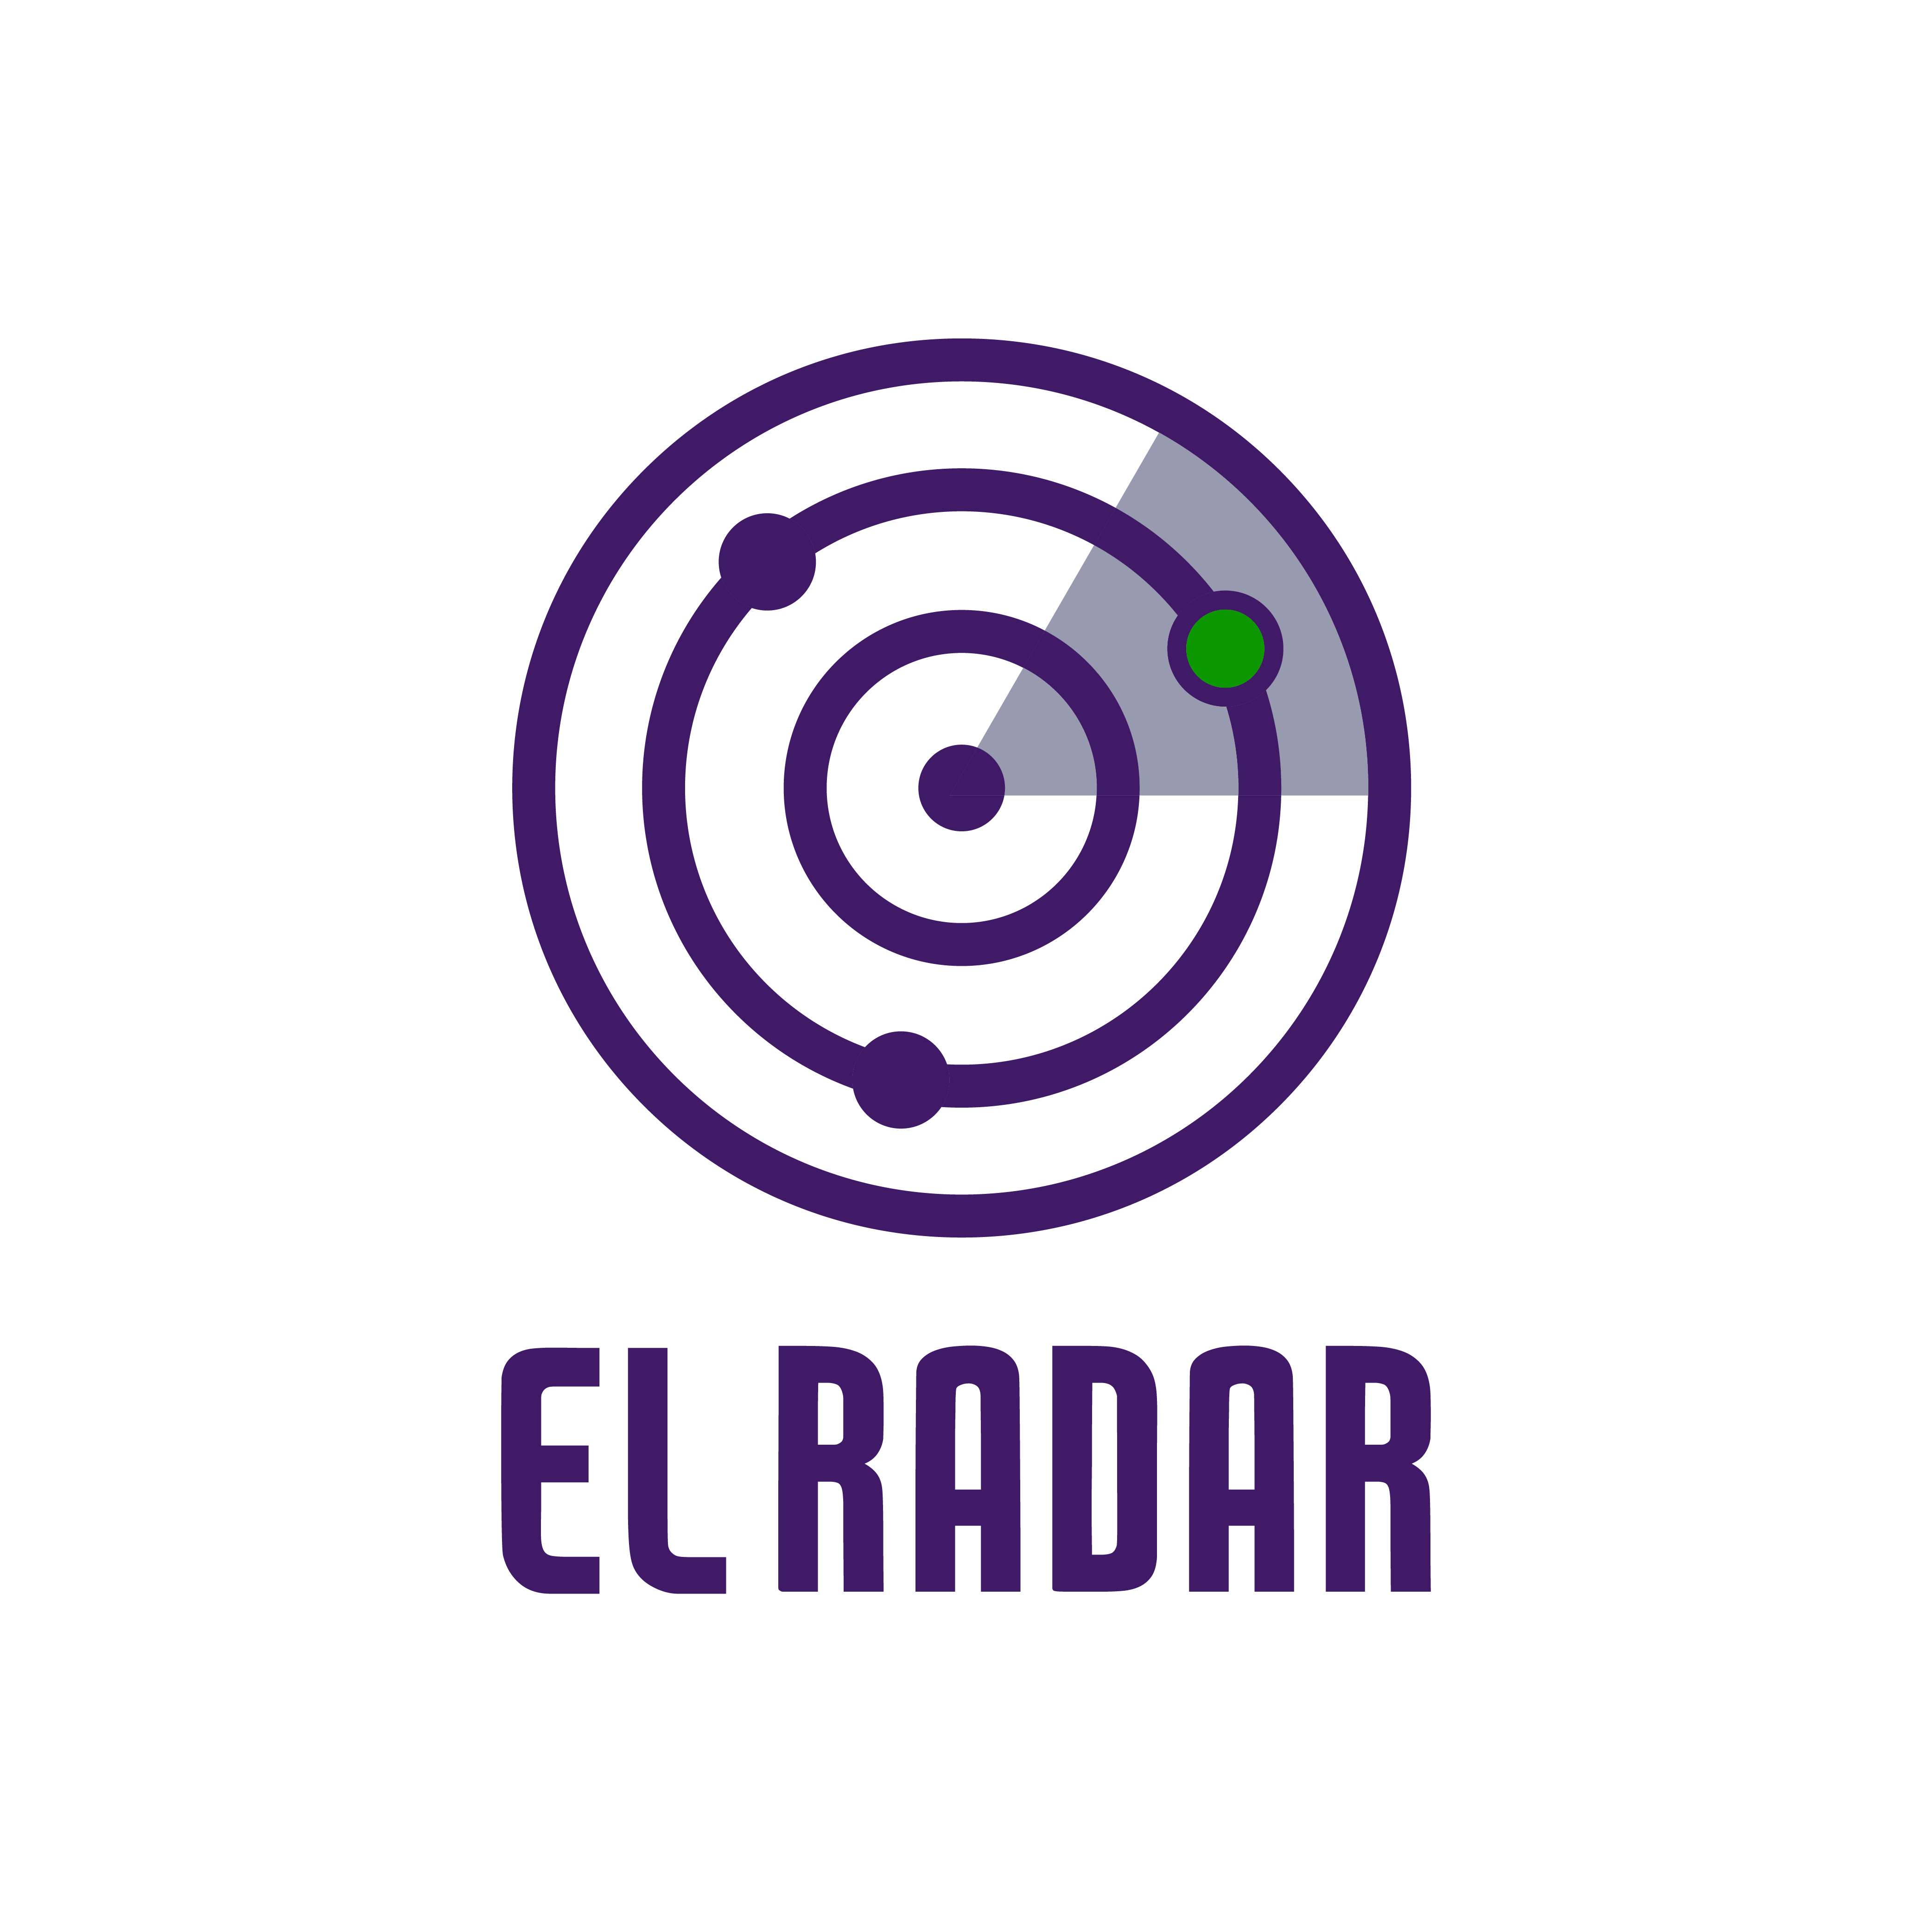 El Radar